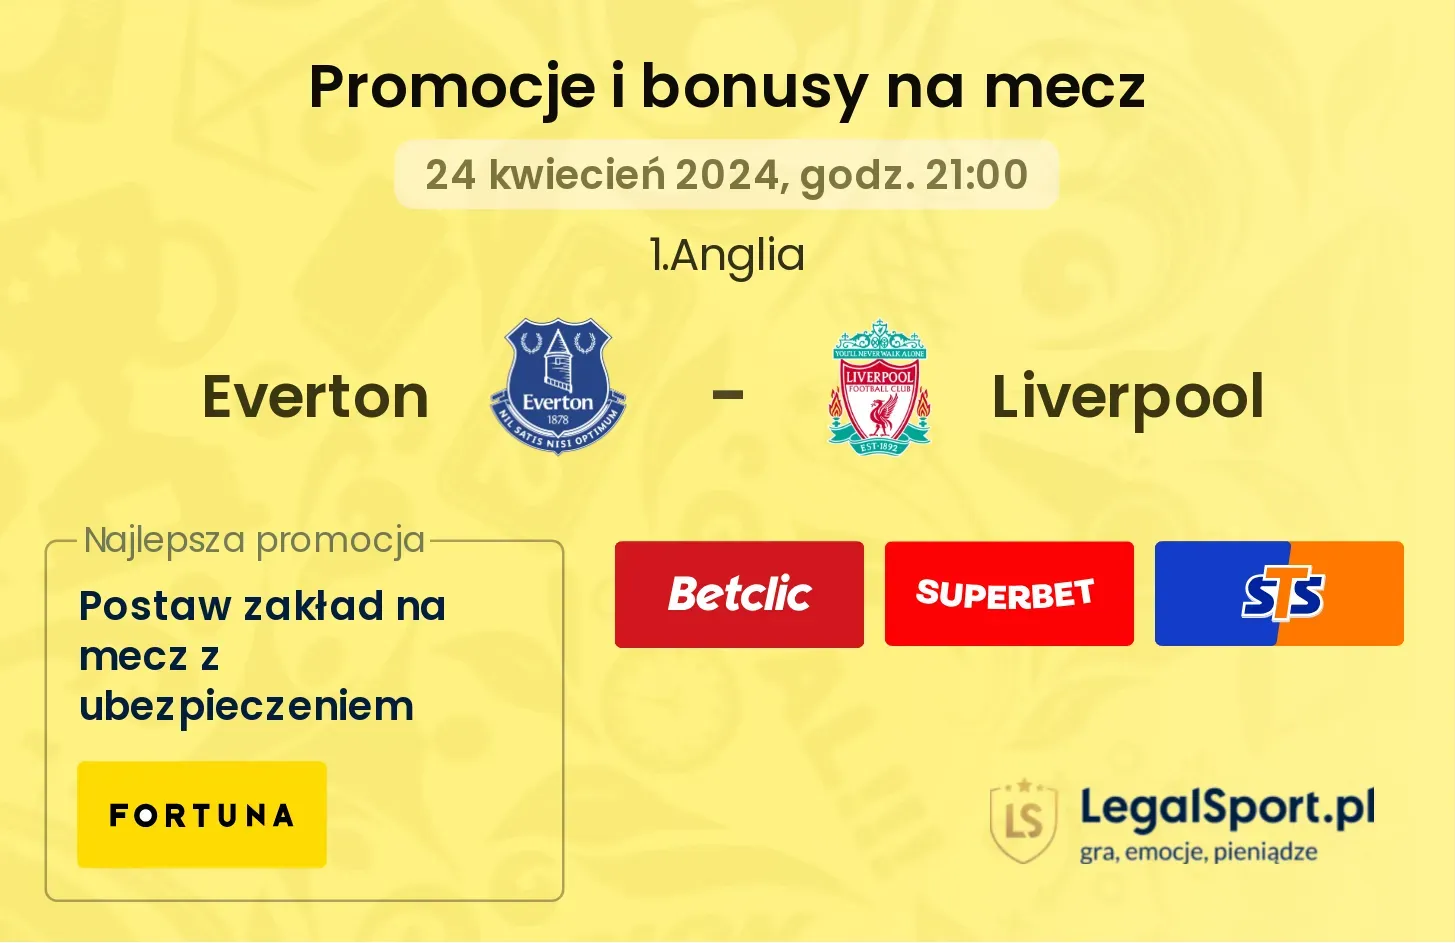 Everton - Liverpool bonusy i promocje (24.04, 21:00)